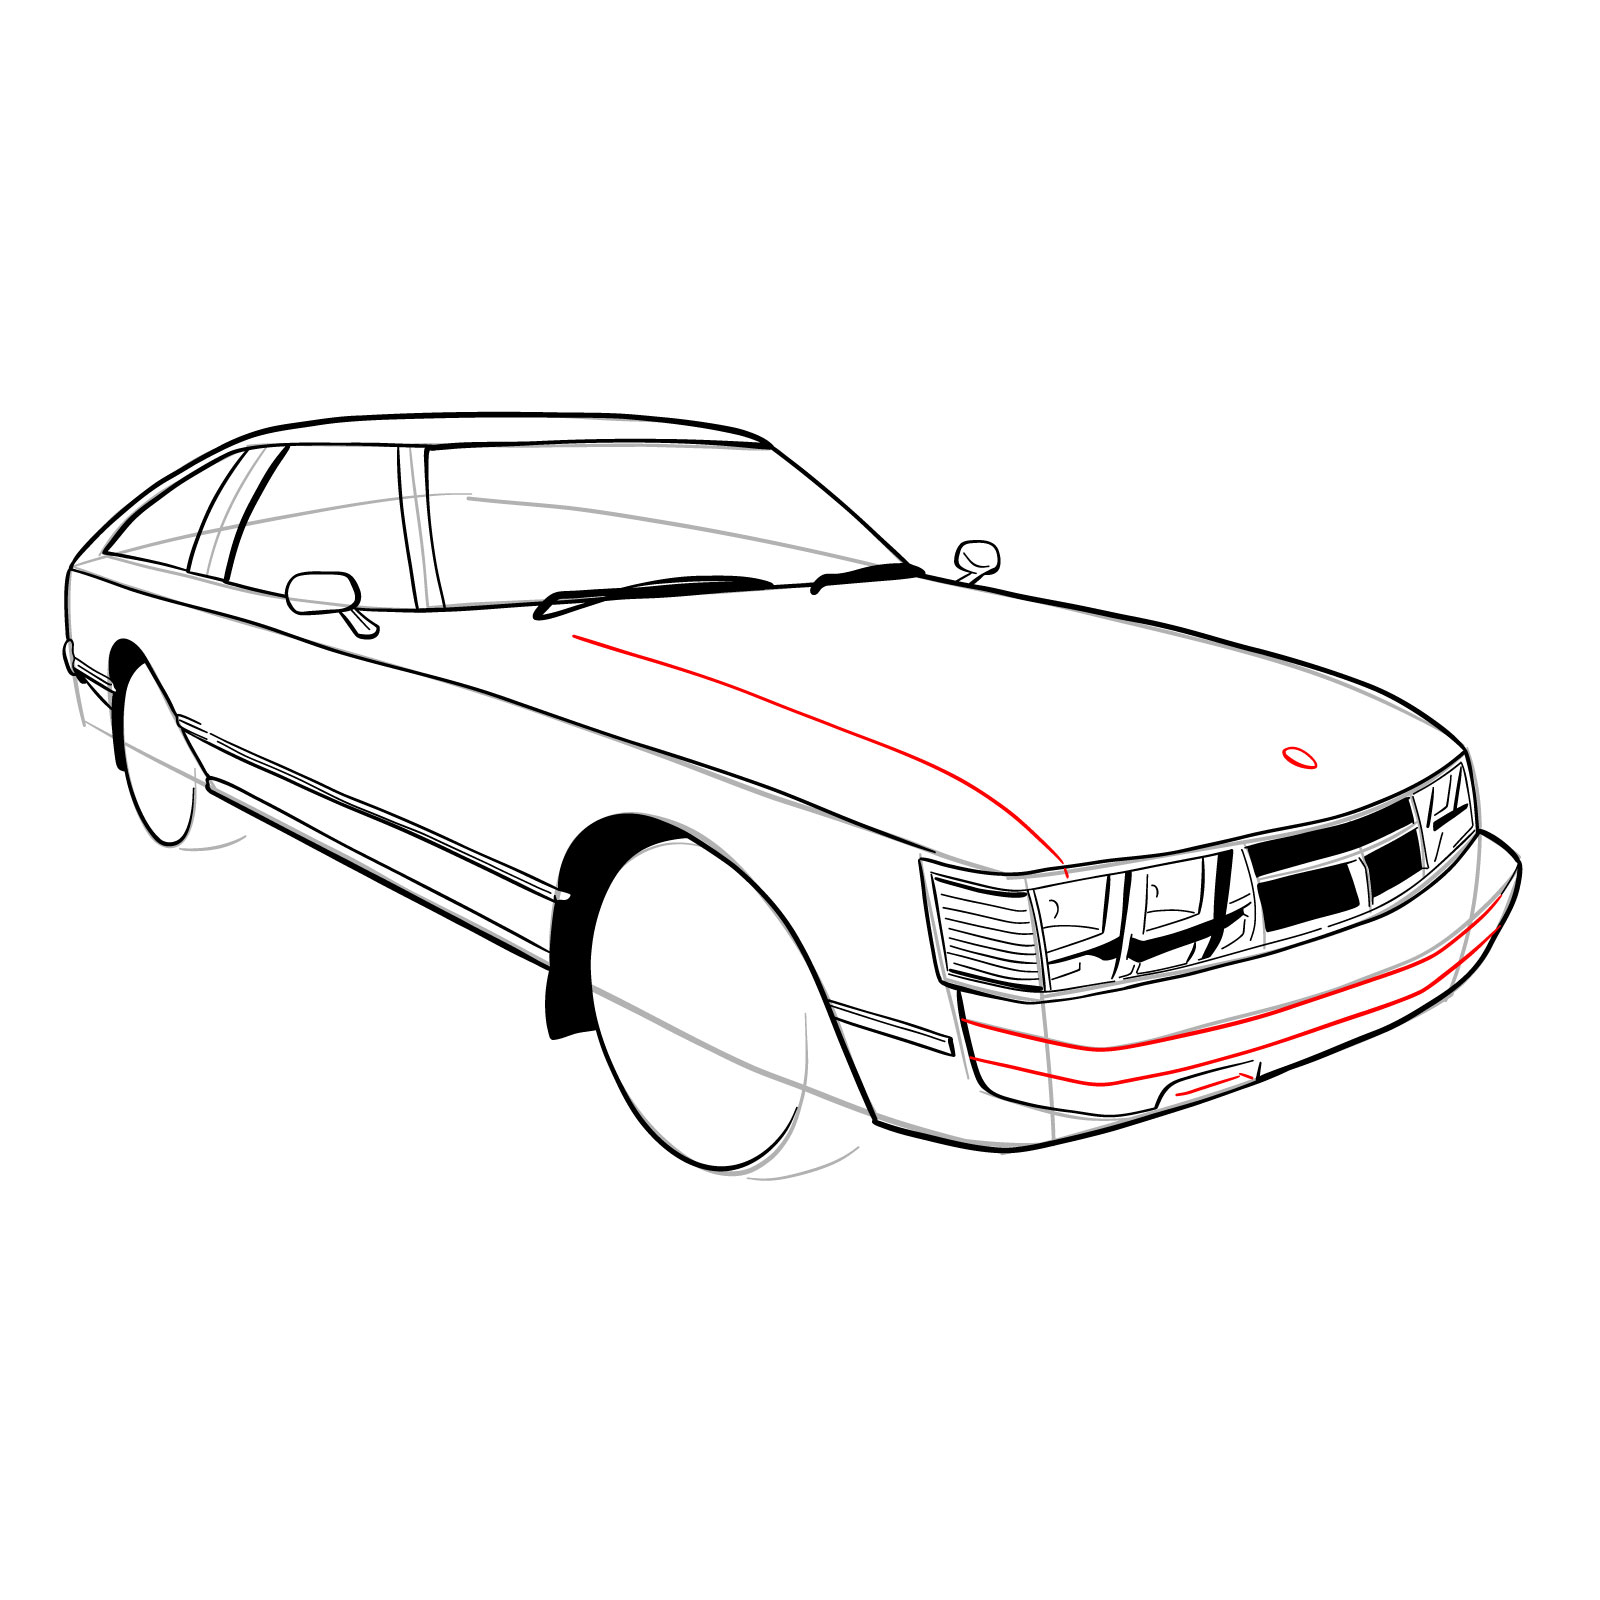 How to draw a 1979 Toyota Celica Supra Mk I Coupe - step 24